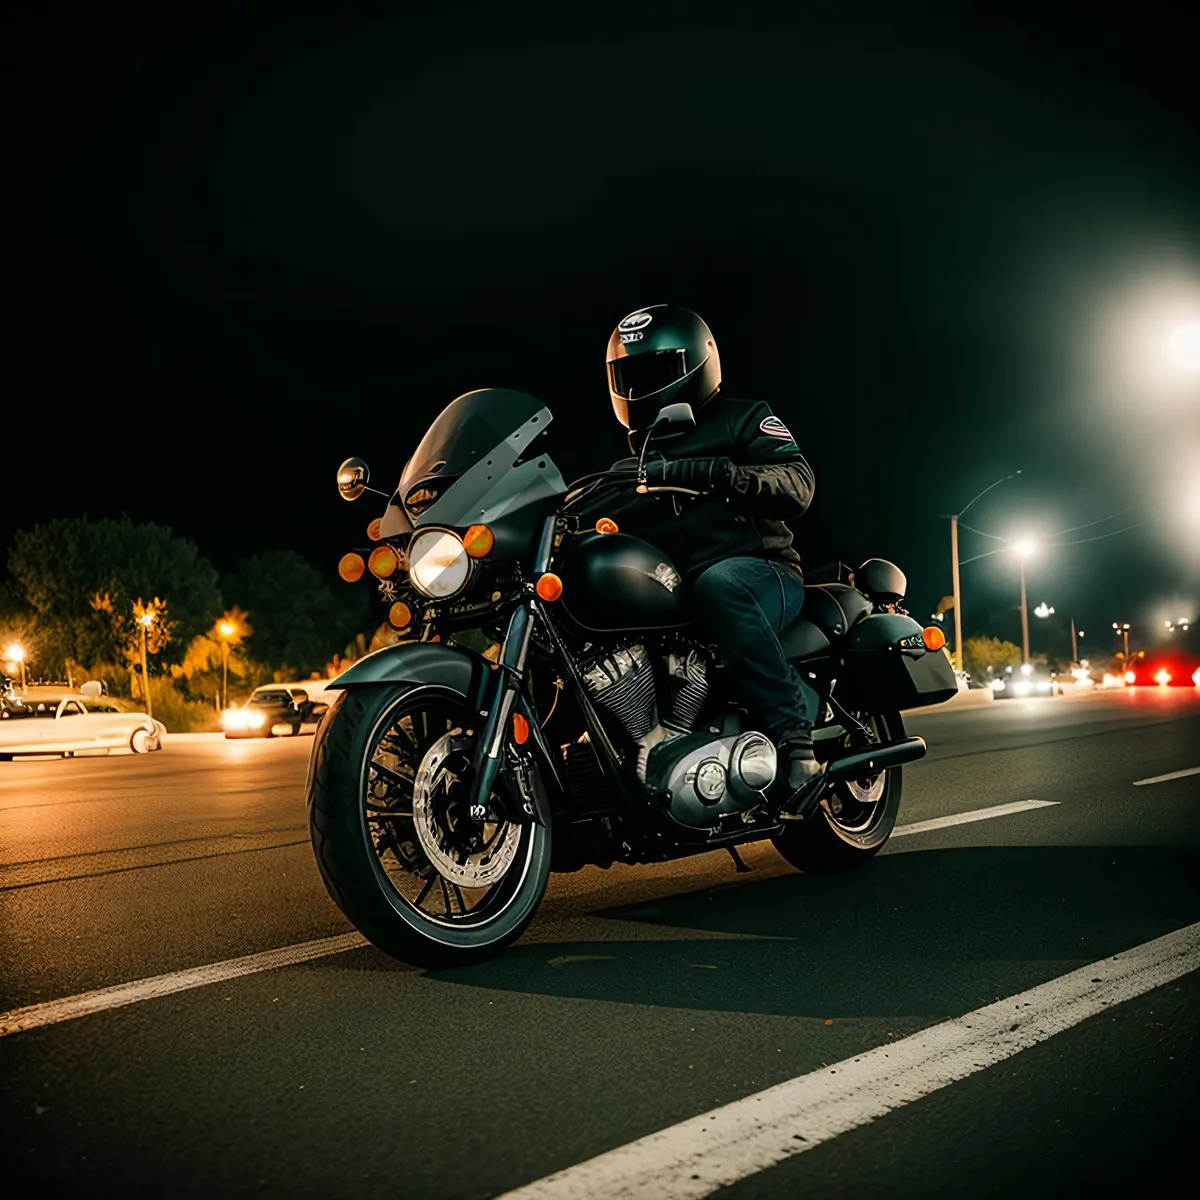 Picture of Speedy Motorcycle Racing Helmet on Road